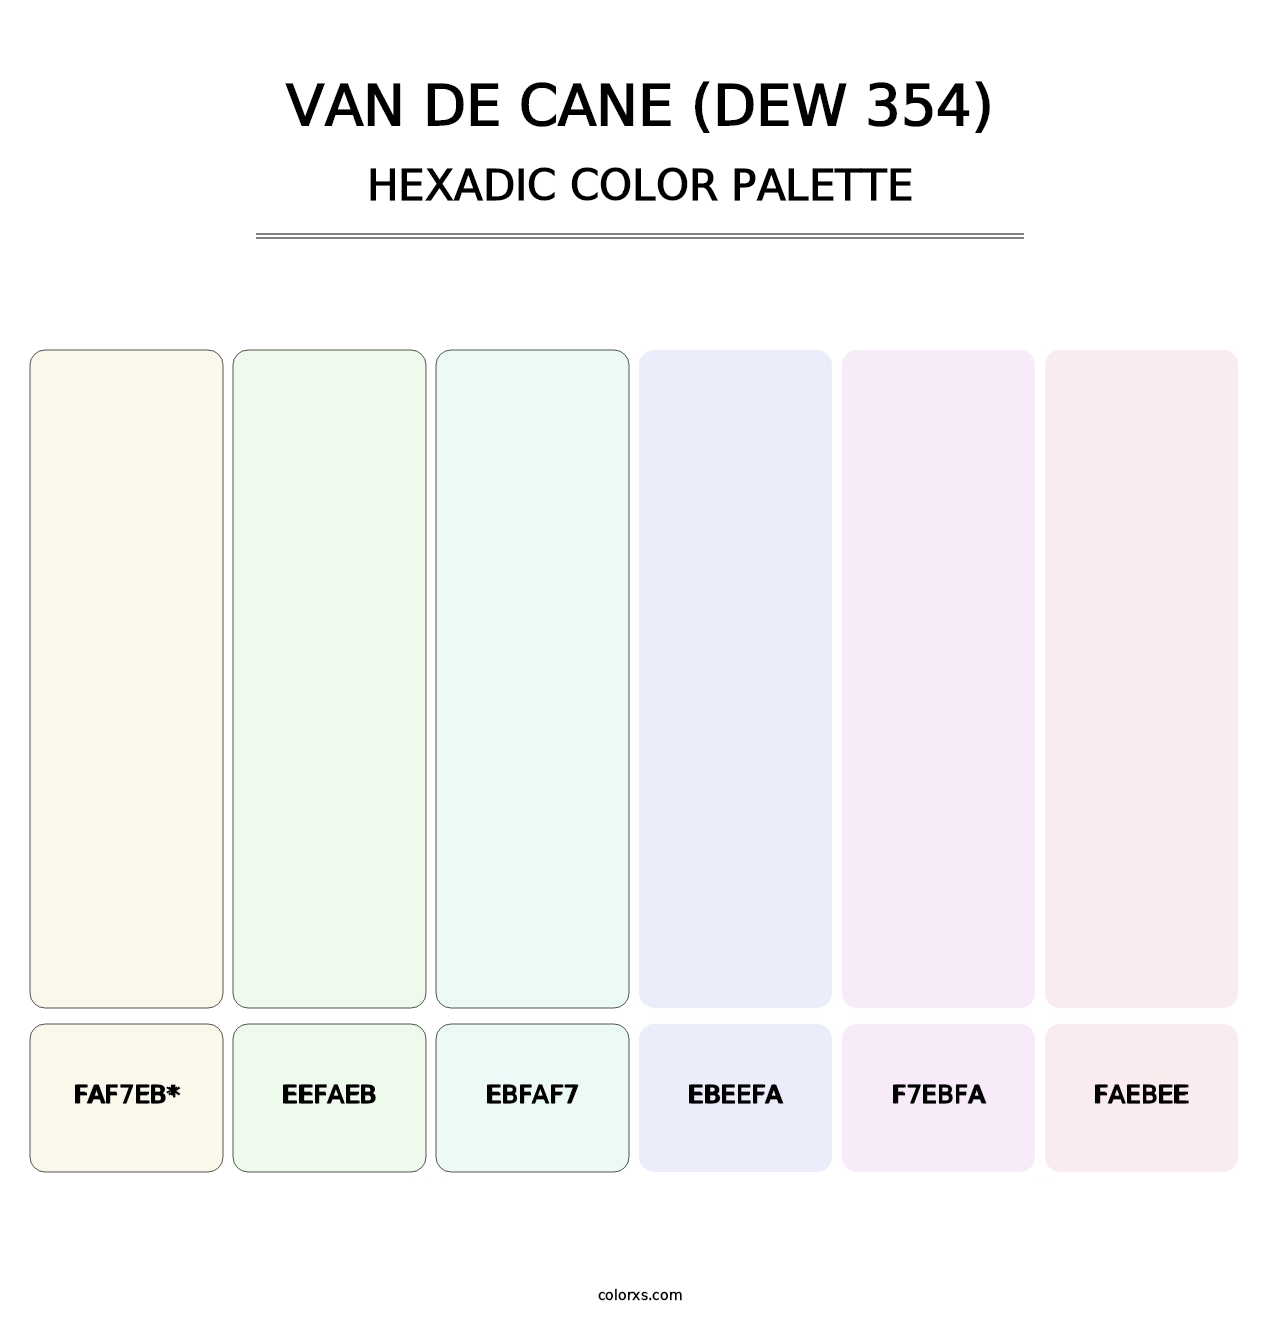 Van de Cane (DEW 354) - Hexadic Color Palette